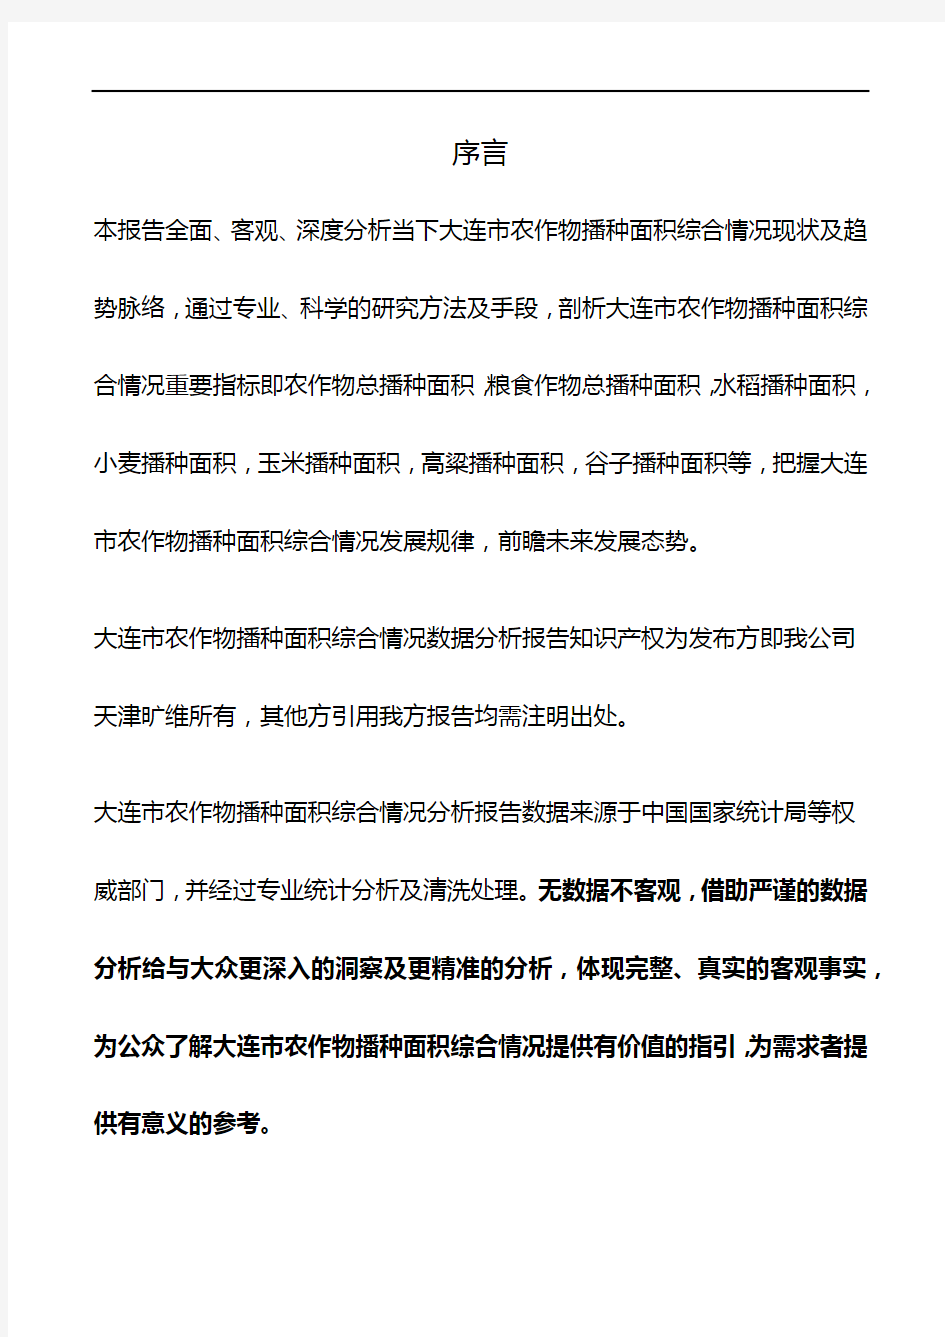 辽宁省大连市农作物播种面积综合情况数据分析报告2019版